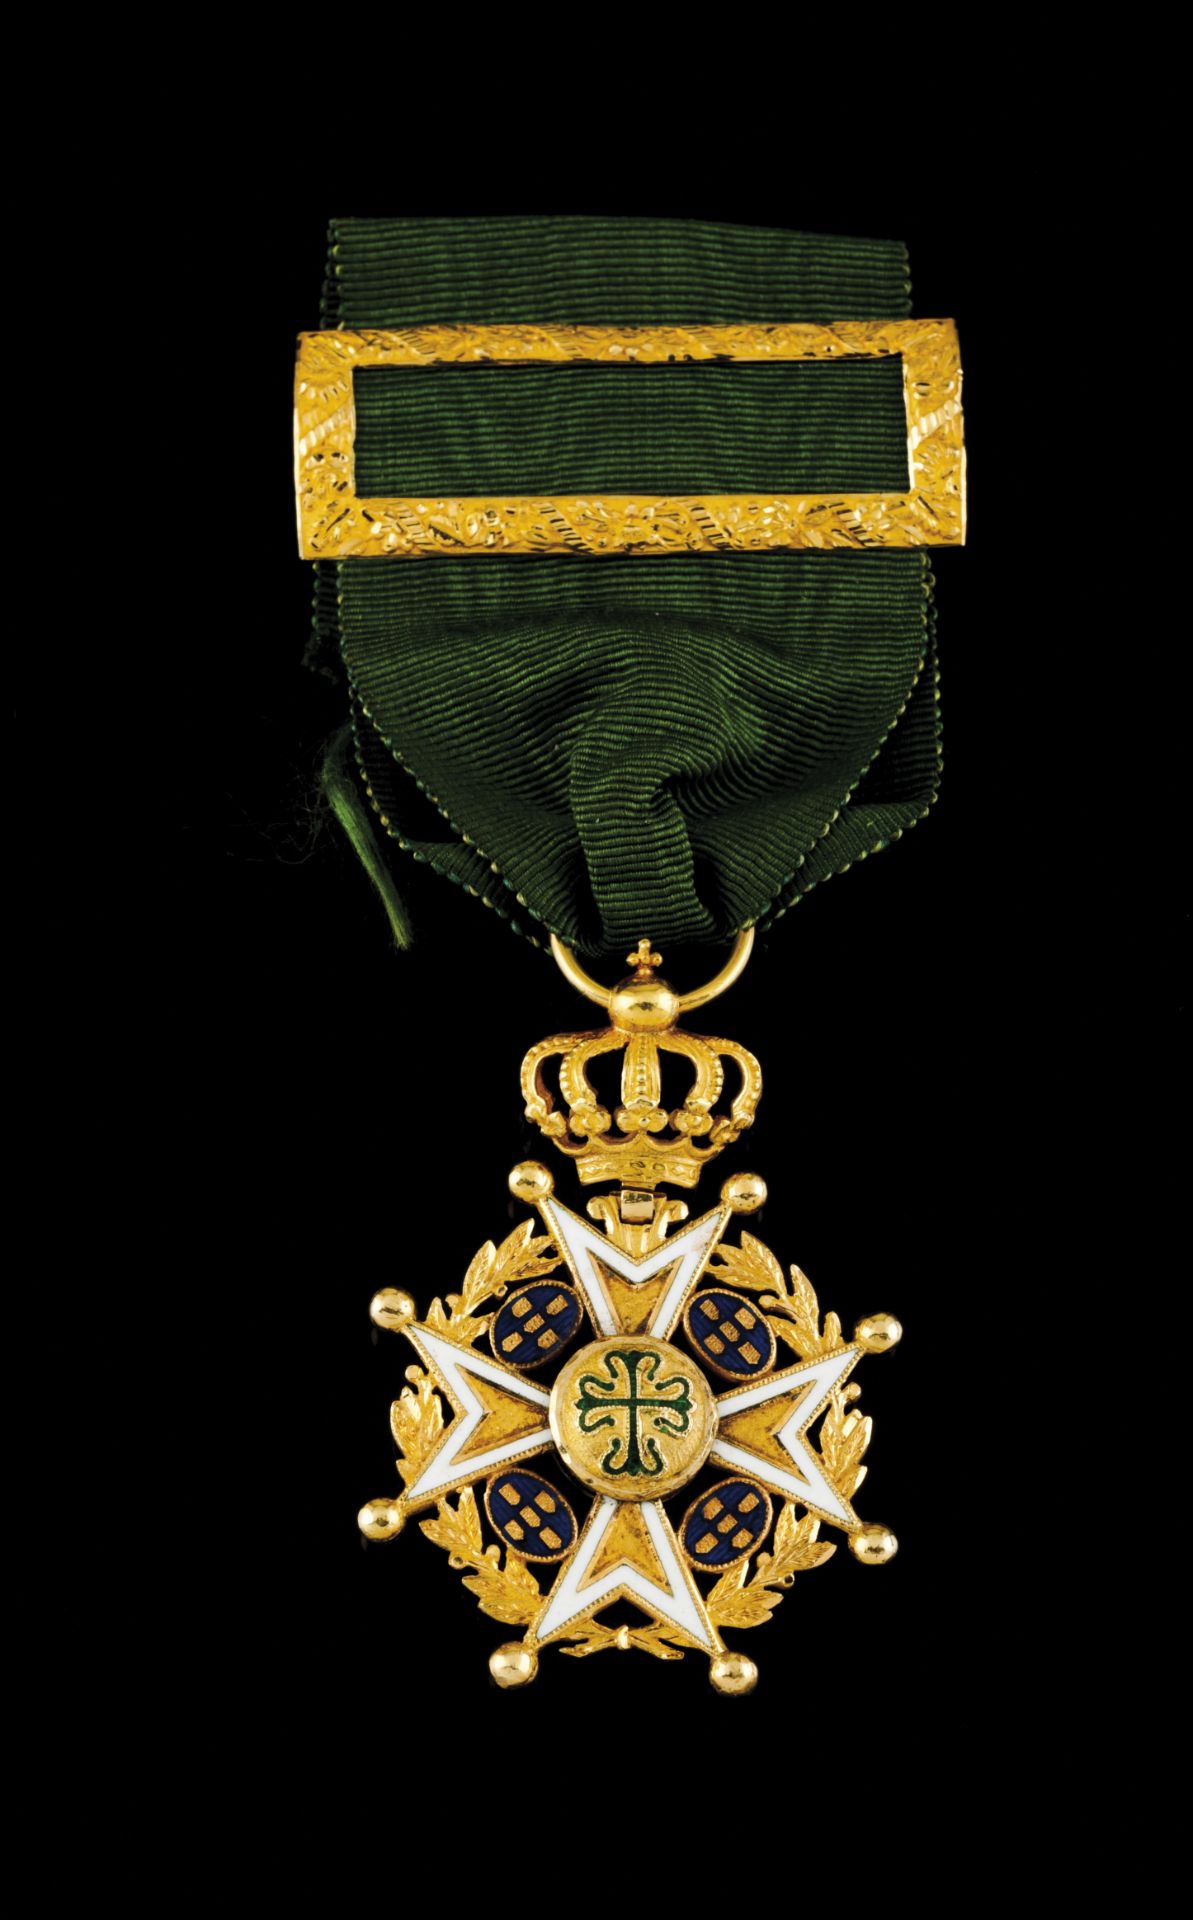 A Knight of Avis Portuguese decoration pendantGold and enamelGreen silk bandPortugal, pre-